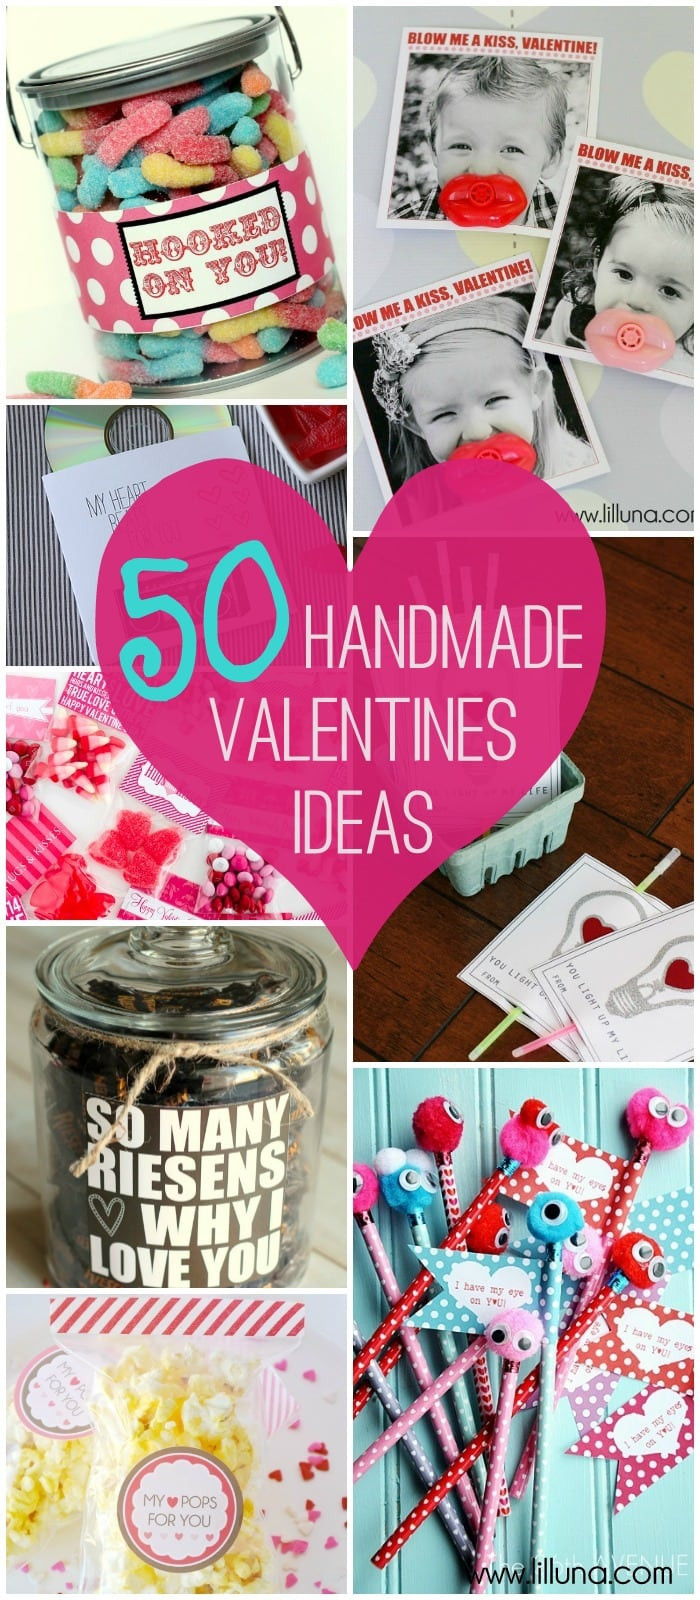 Great Valentine Gift Ideas
 Valentines Ideas